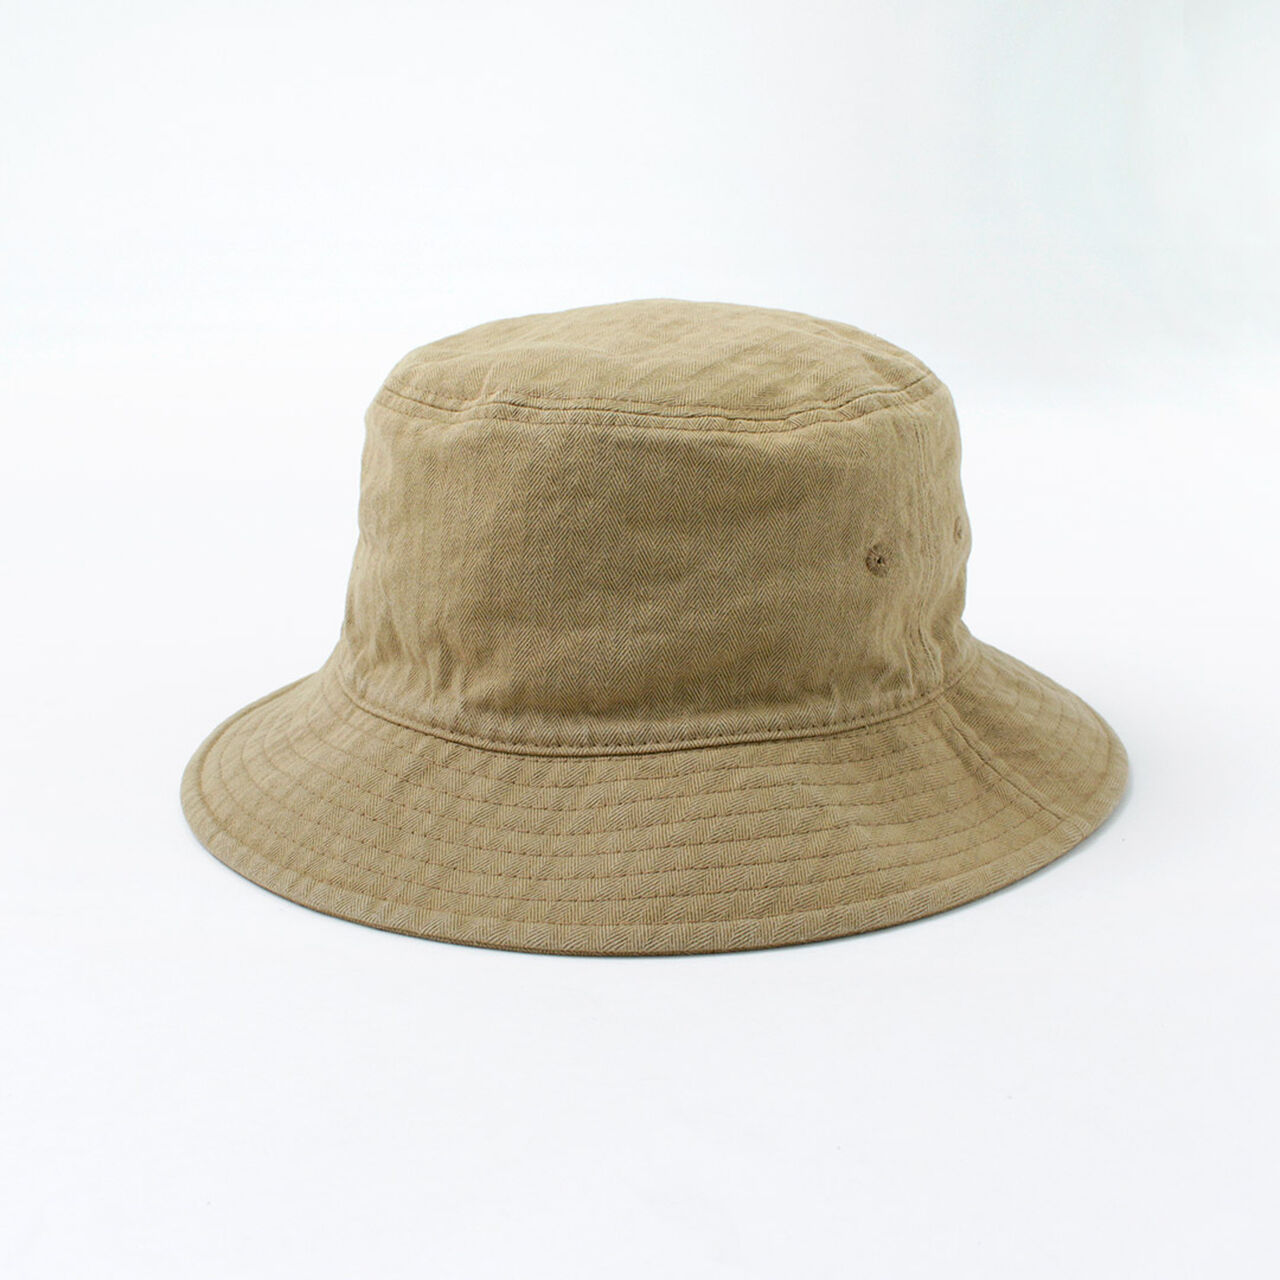 Bespoke Vintage Herringbone Bucket Hat,Beige, large image number 0